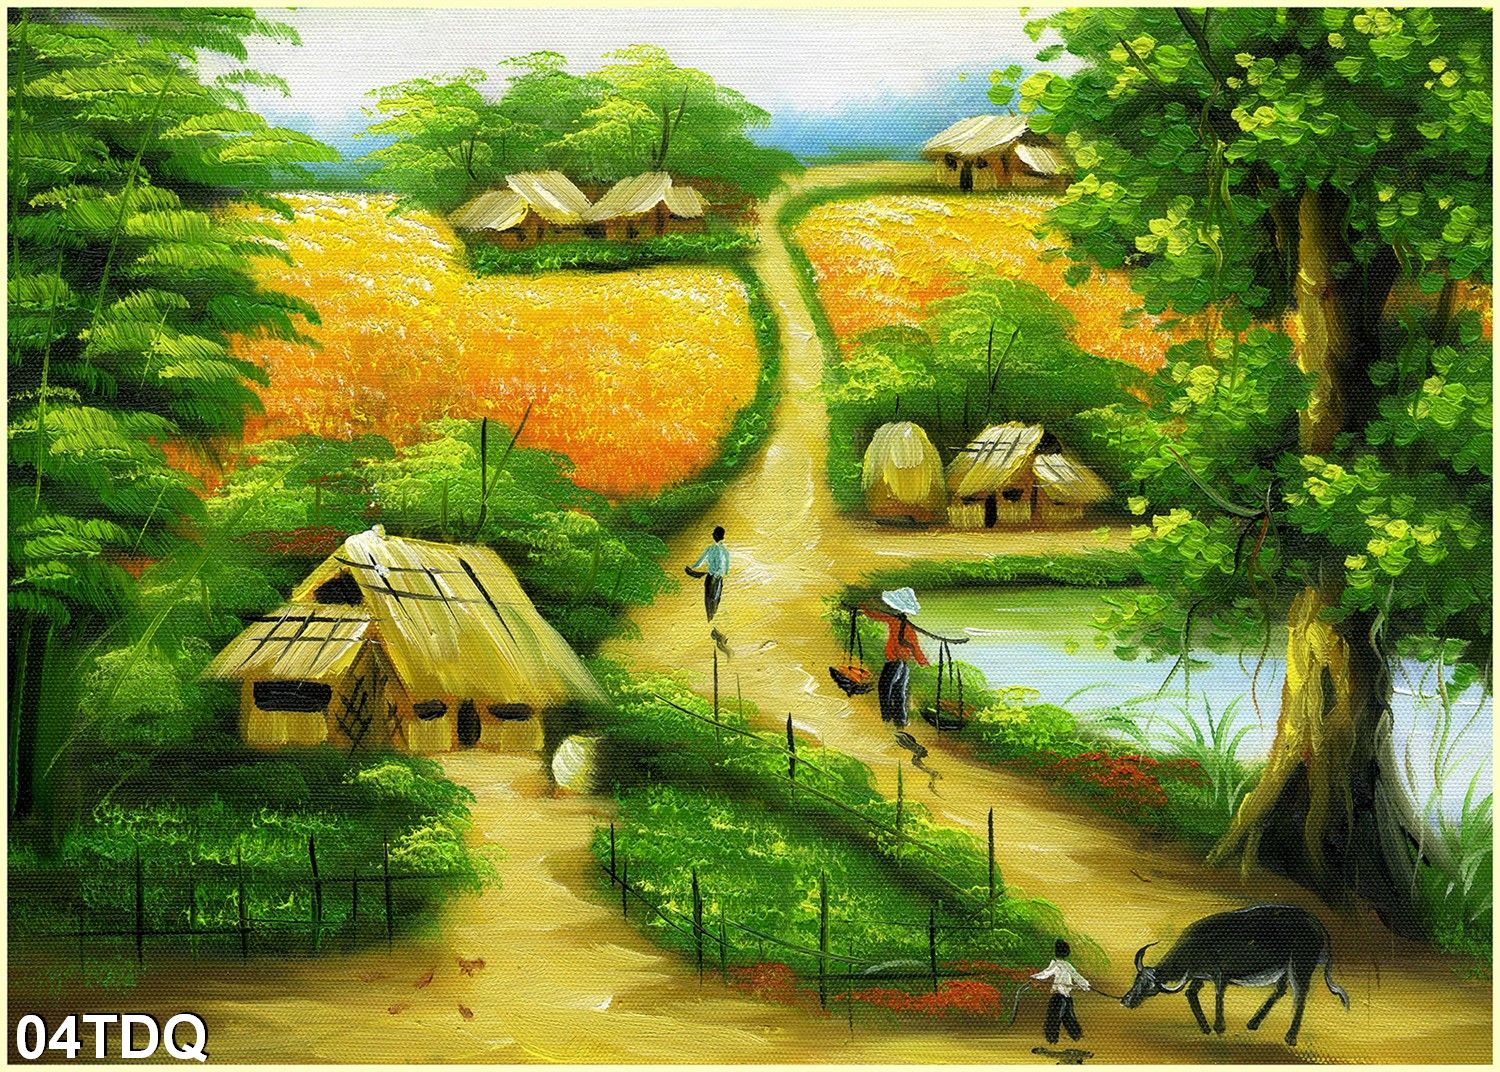 Tưởng tượng một mảnh tường trong nhà bạn được trang trí bằng tranh phong cảnh làng quê Việt Nam? Đó sẽ là một điểm nhấn hoàn hảo cho không gian sống của bạn. Xem hình minh họa của chúng tôi để có một cái nhìn tổng quan về loại tranh này.